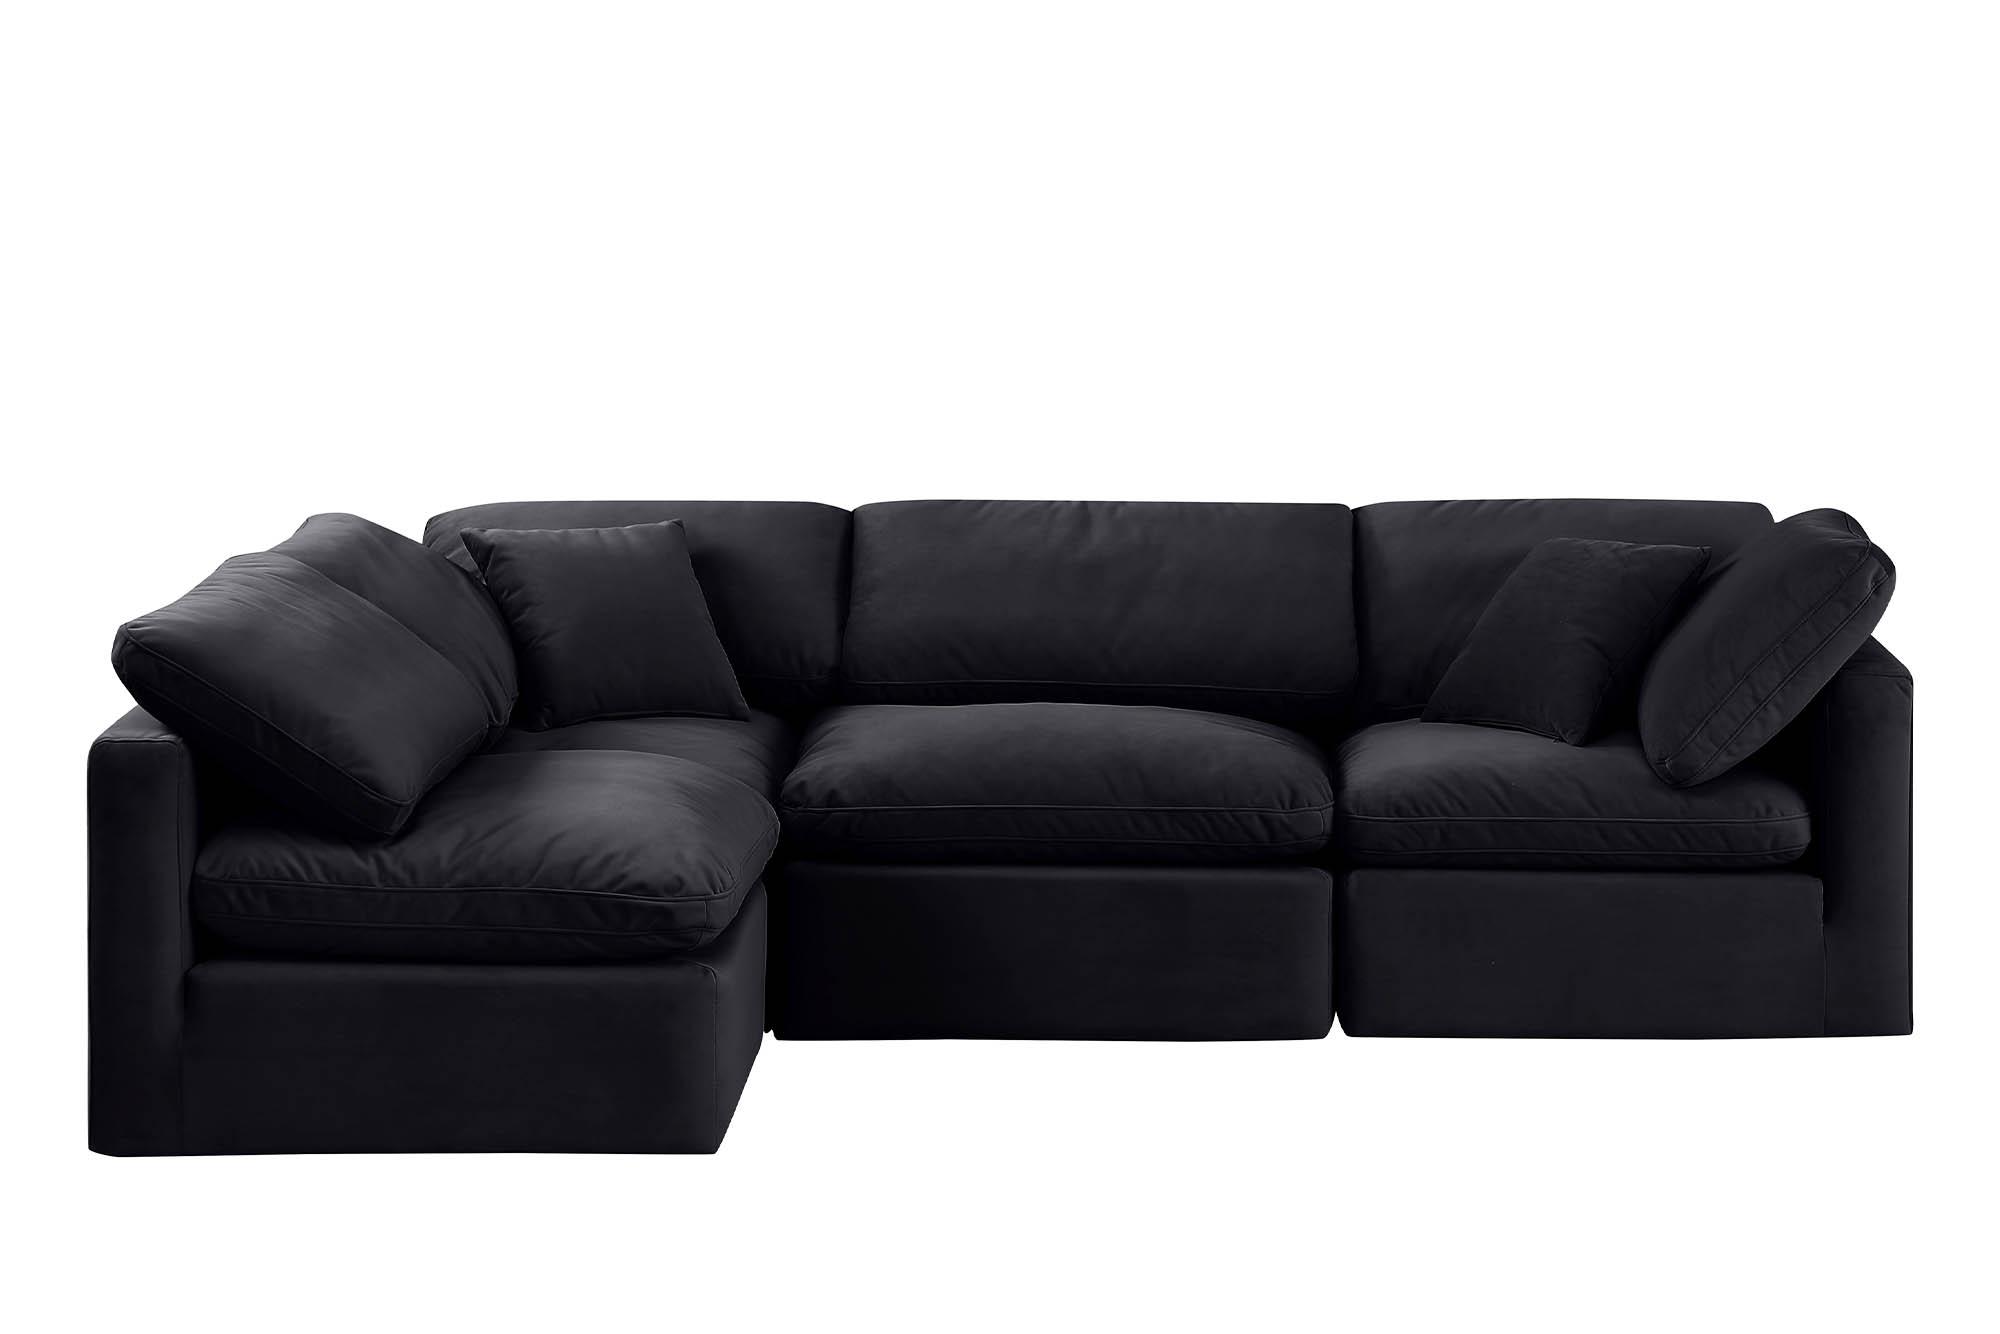 

    
Meridian Furniture INDULGE 147Black-Sec4B Modular Sectional Sofa Black 147Black-Sec4B
